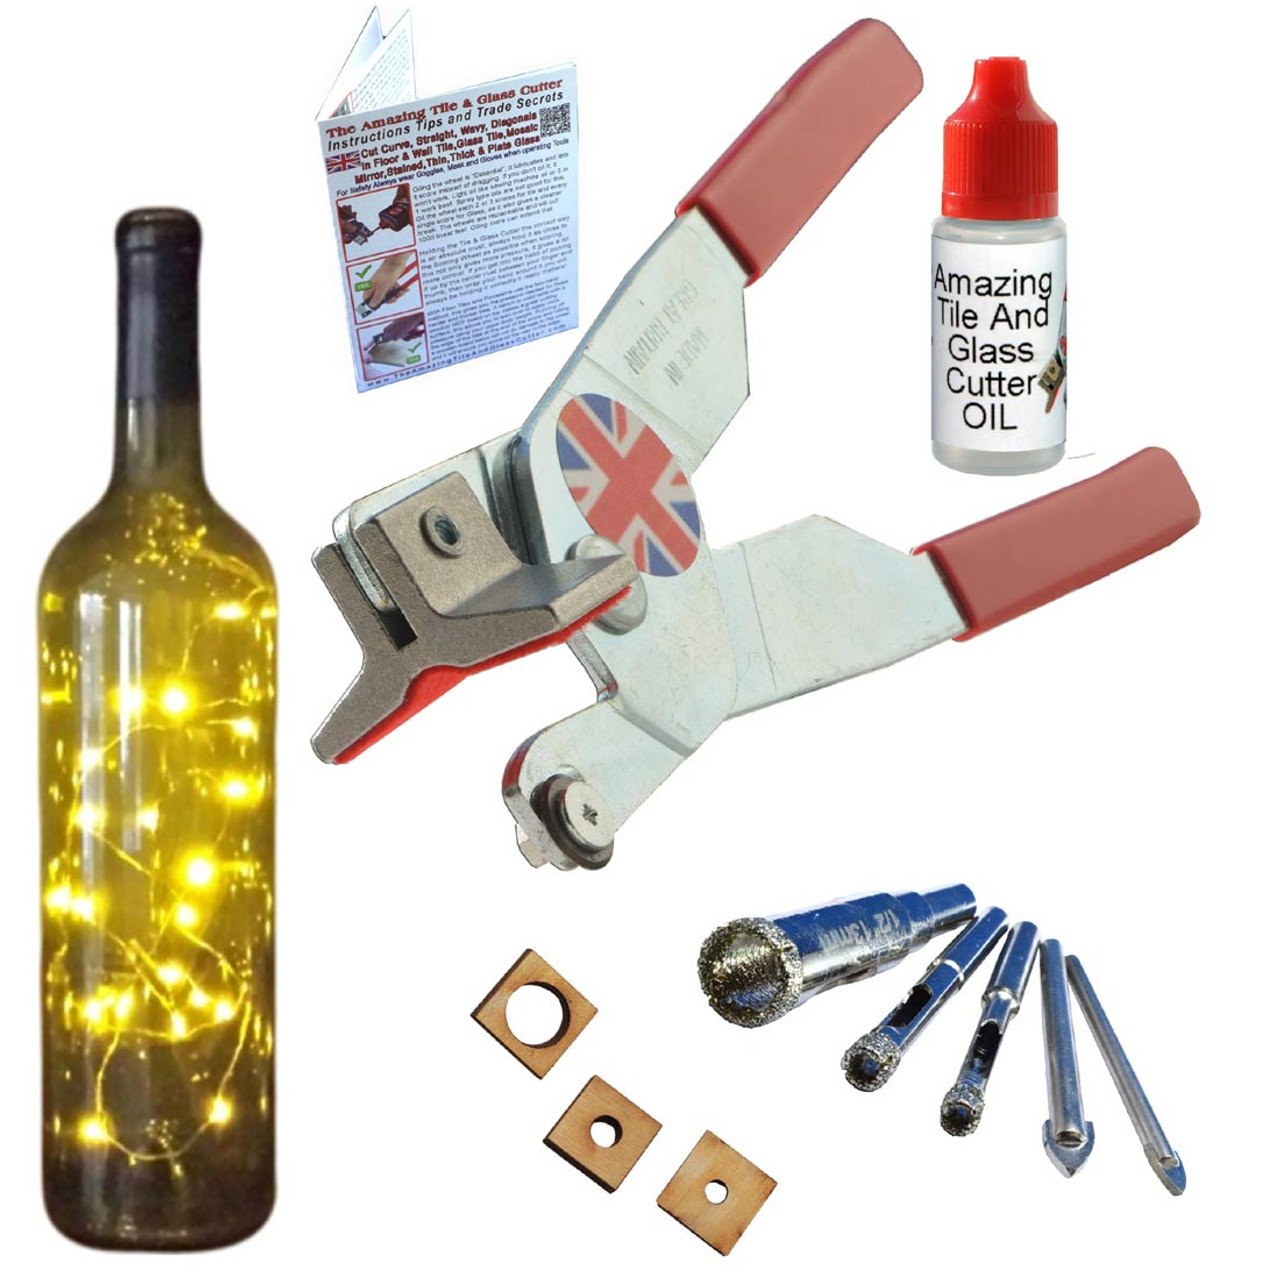 Glass Bottle Cutter Kit: Regular Kit to Make Glasses From Wine